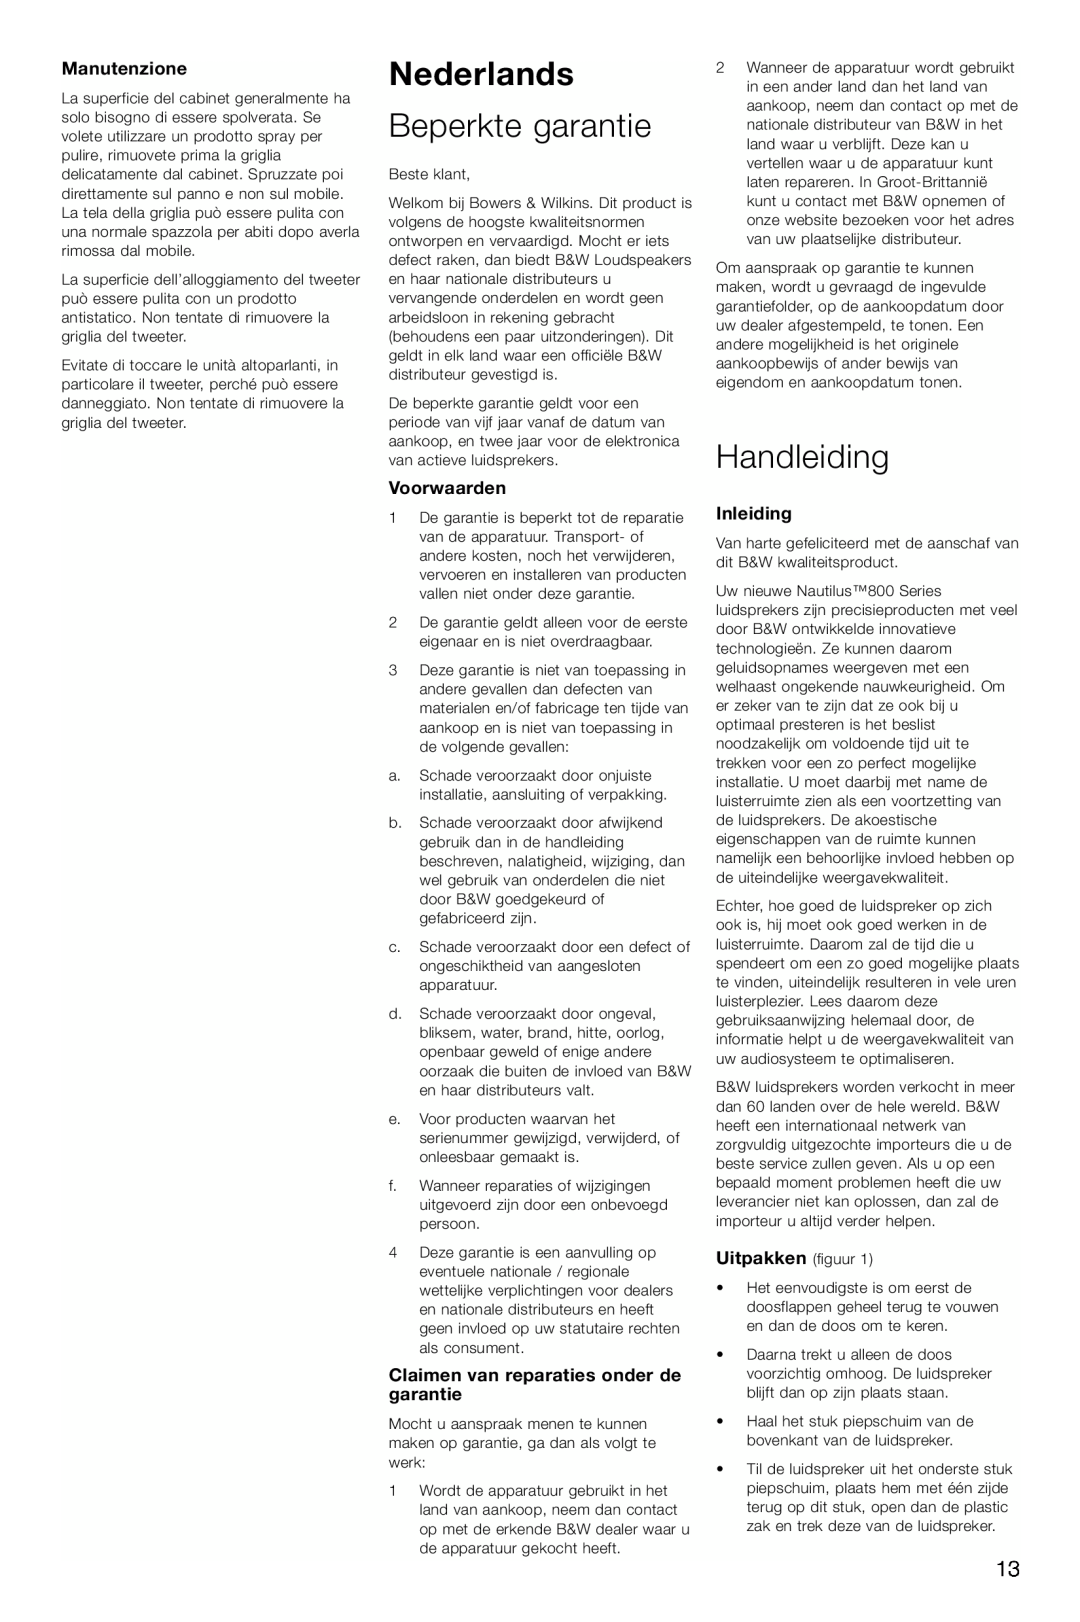 Bowers & Wilkins HTM1 Nederlands, Beperkte garantie, Handleiding, Manutenzione, Voorwaarden, Inleiding, Uitpakken figuur 